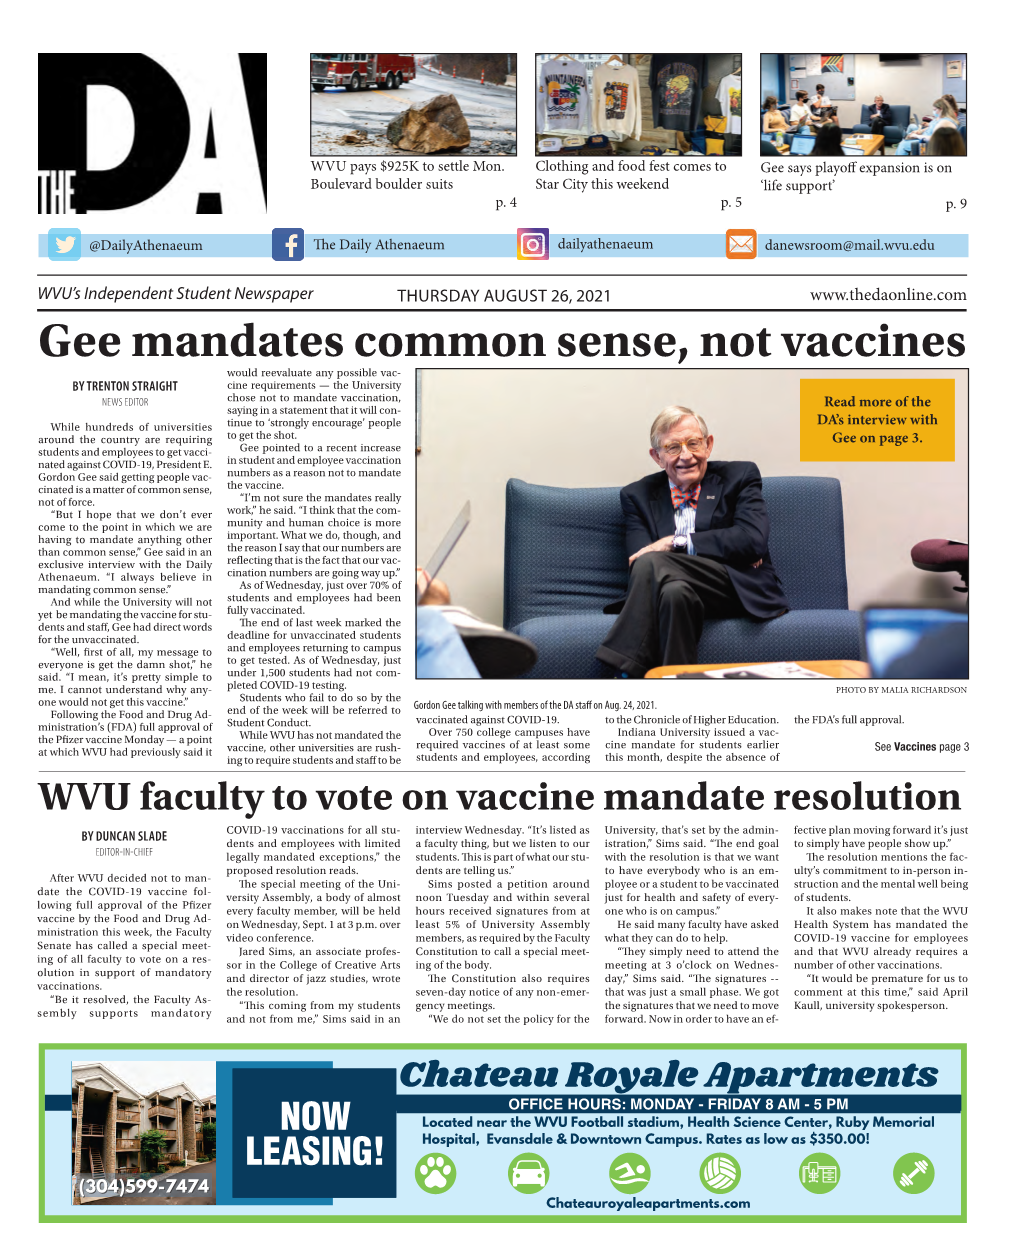 Gee Mandates Common Sense, Not Vaccines